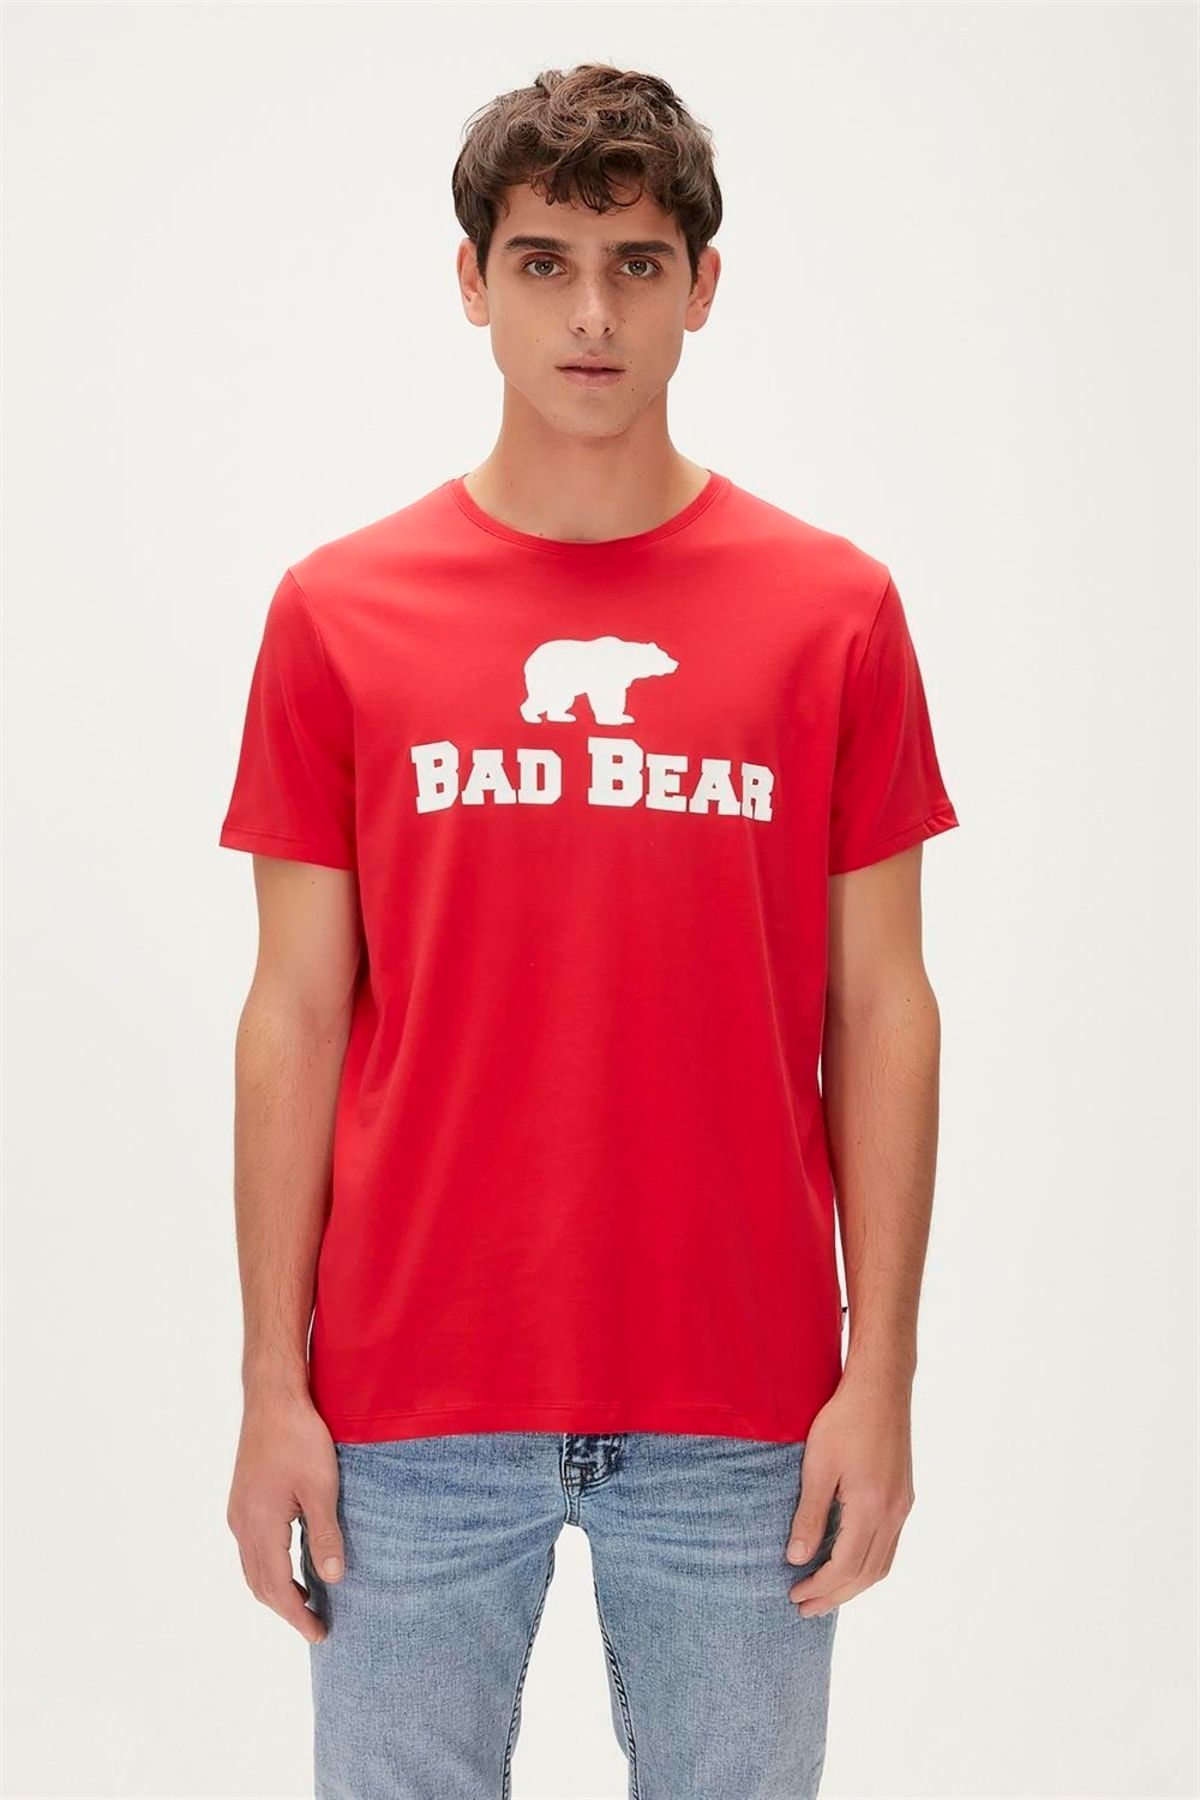 Bad Bear 19.01.07.002 Tee Erkek T-Shirt